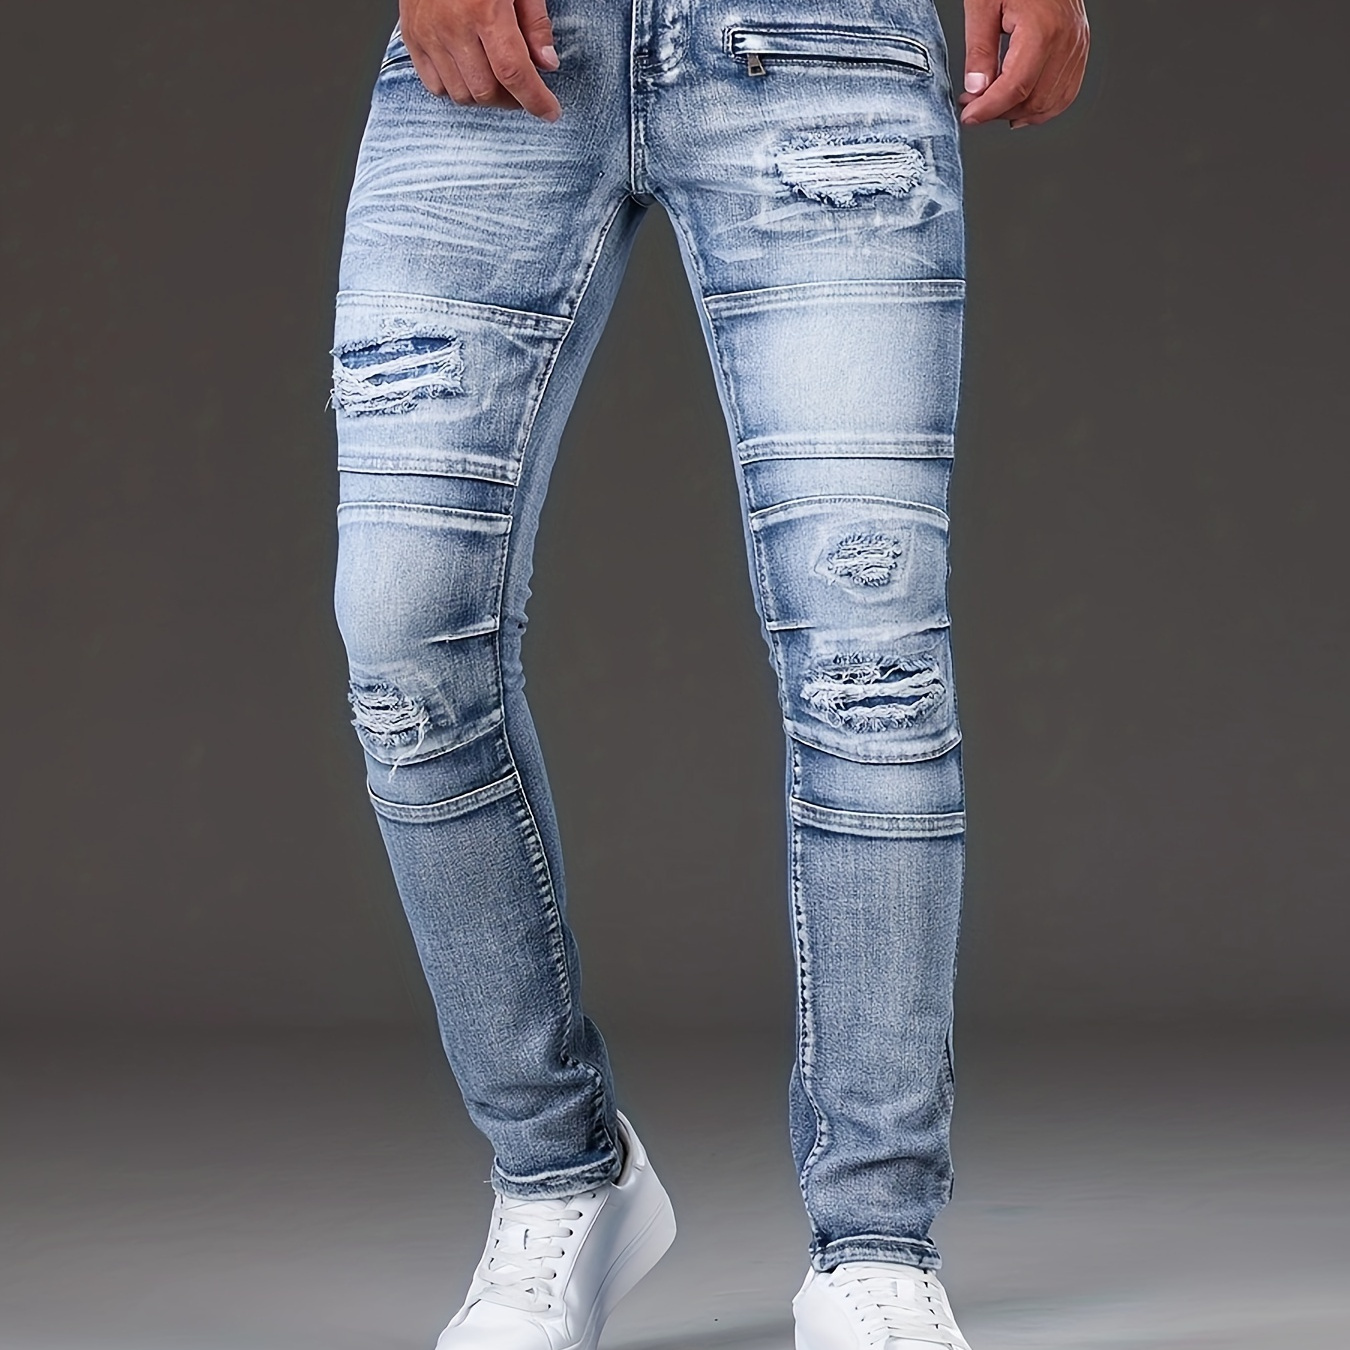 

Men's Skinny Ripped Jeans, Casual Street Style Biker Jeans